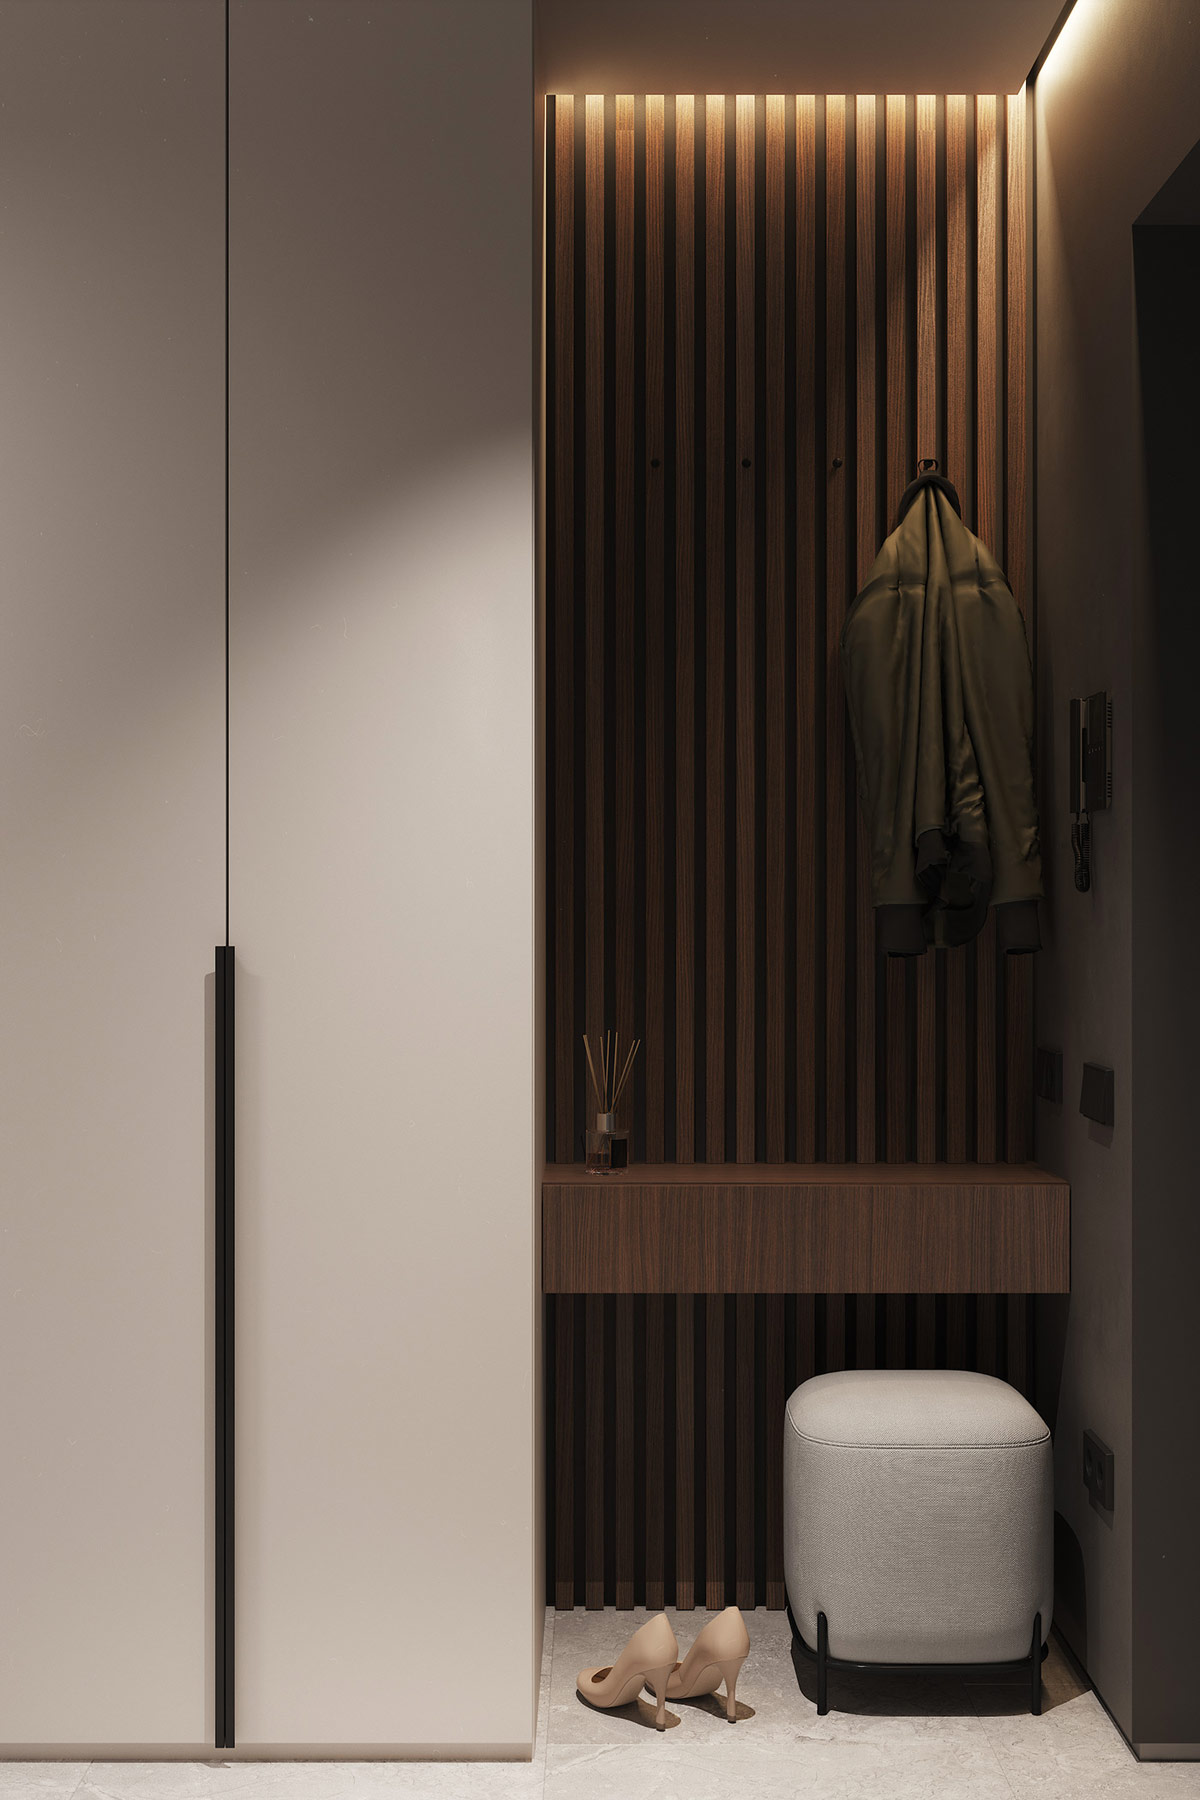 Góc treo áo, ngồi nghỉ ở khu vực hành lang căn hộ 60m2. Chất liệu gỗ sẫm tạo chiều sâu cho không gian, mang lại cảm giác thân thiện.